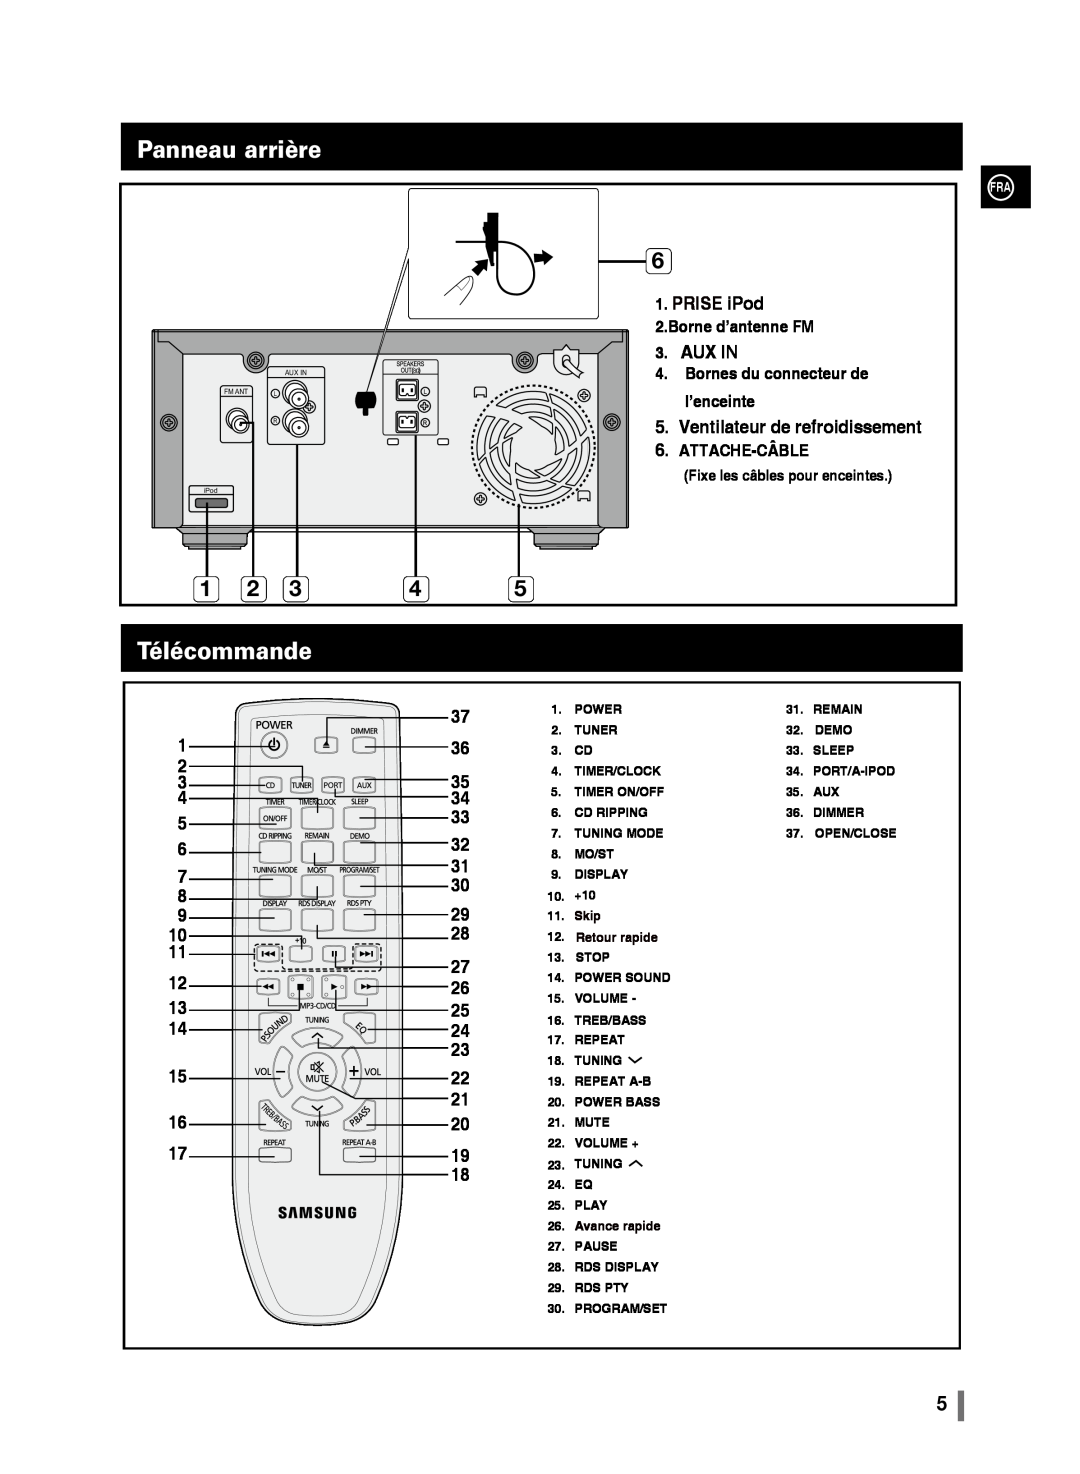 Samsung MM-C430/XEF Panneau arrière, Télécommande, Prise iPod, Aux In, Ventilateur de refroidissement, Borne d’antenne FM 